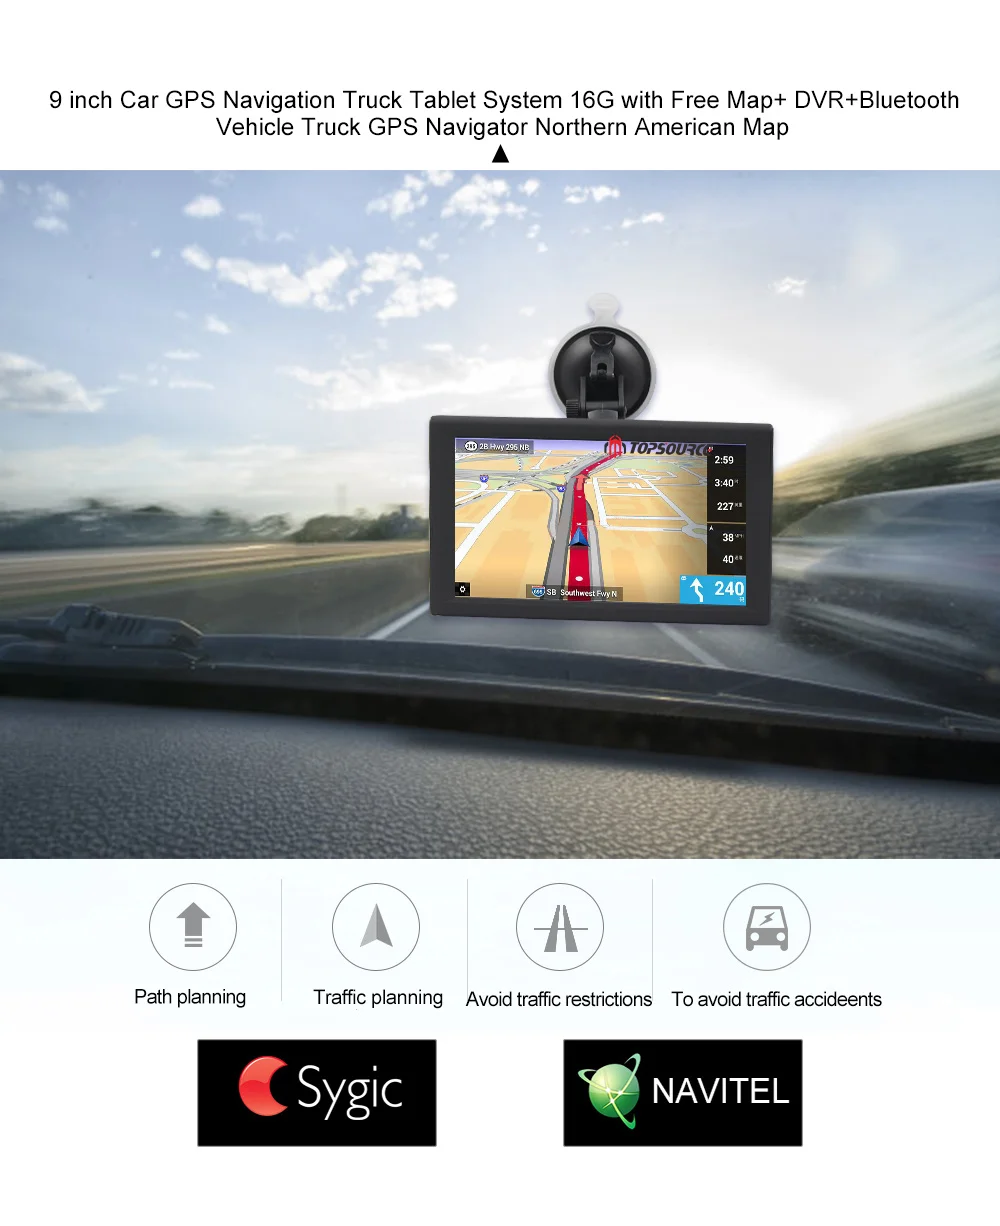 TOPSOURCE Android 9 дюймов Автомобильный грузовик gps навигация 16 Гб DVR видео рекордер планшет AV-IN Поддержка Камера заднего вида с бесплатными картами